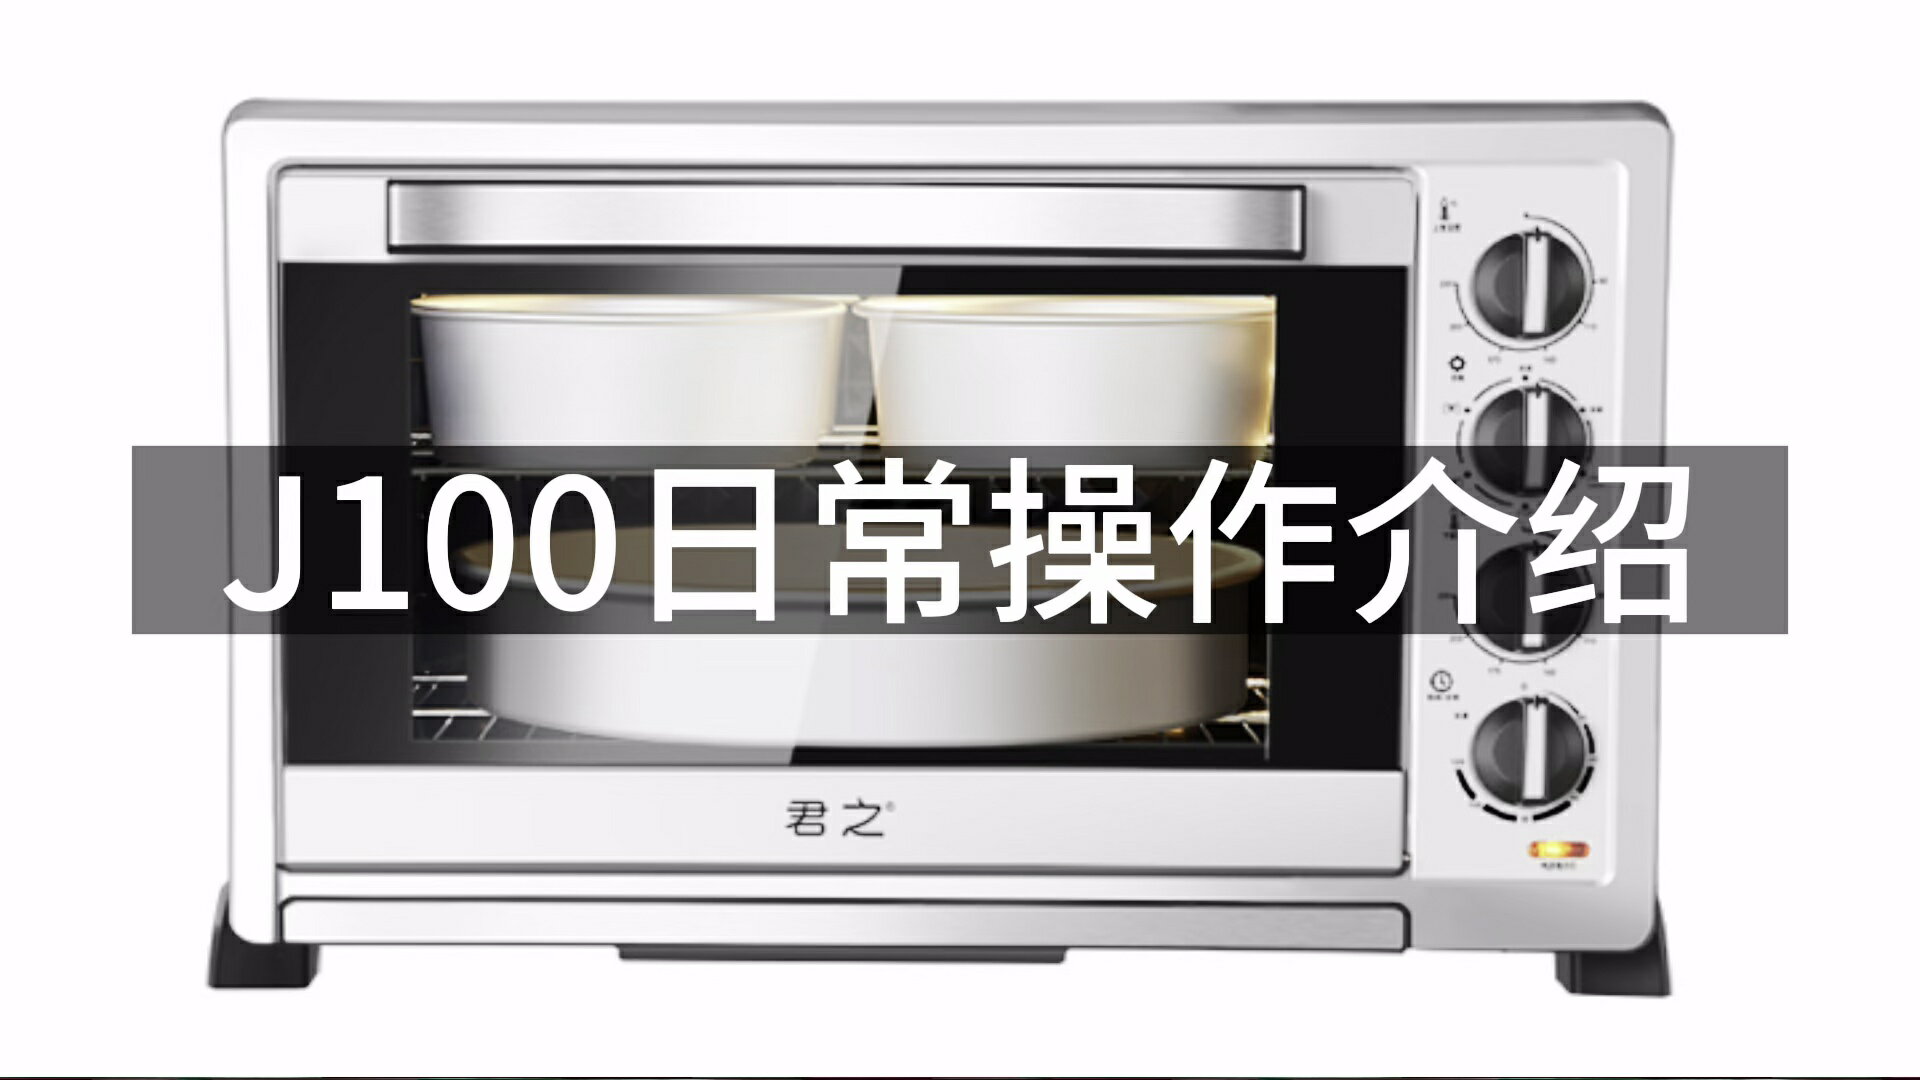 君之長實大容量商用烤箱J100家用烘焙蛋糕平爐烘焙發酵專用電烤箱